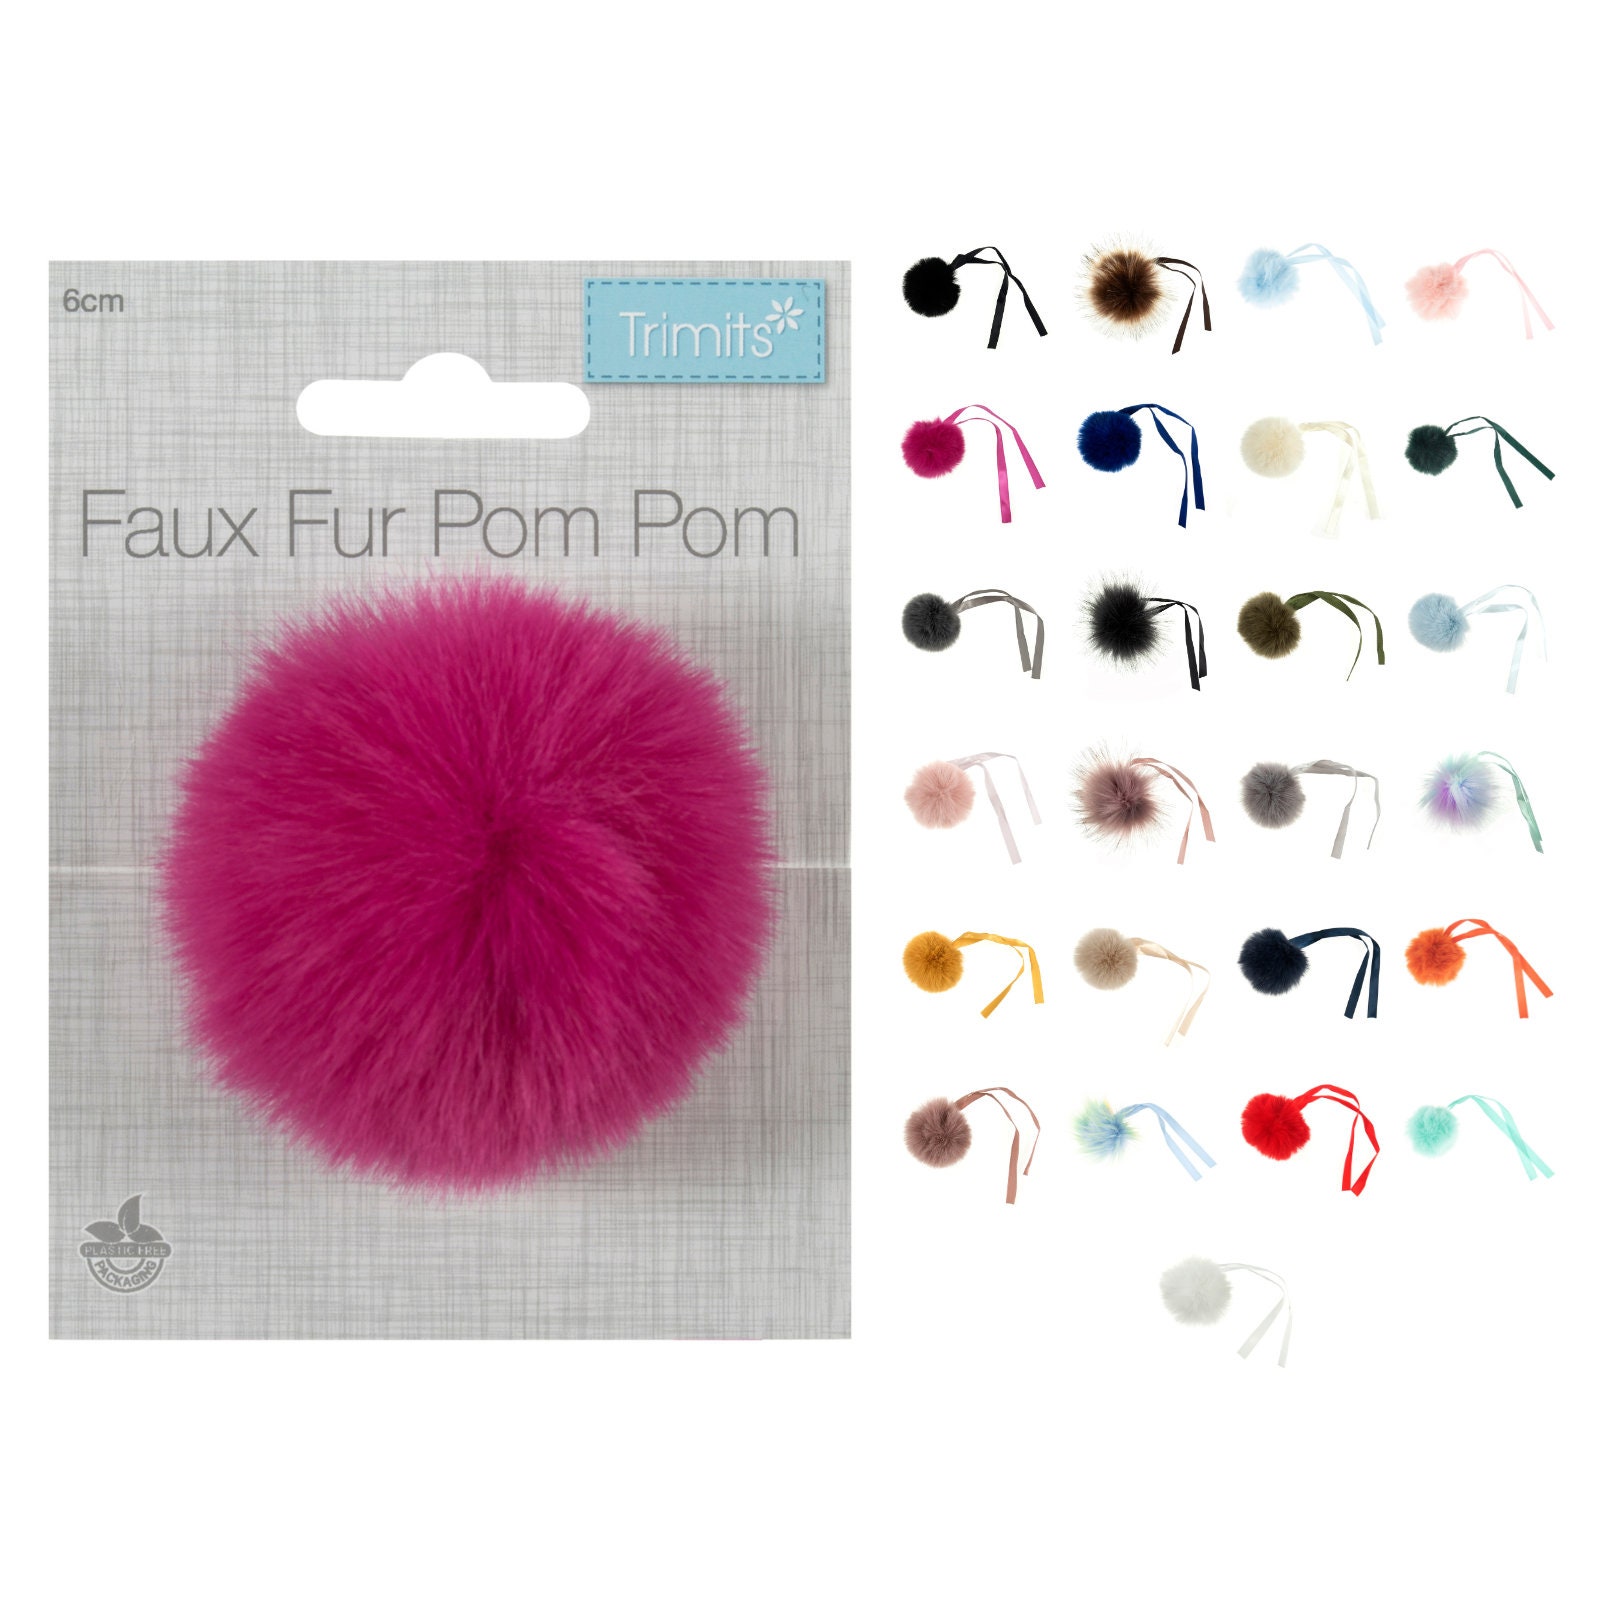 1-5cm DIY Pom Pom Ball Assorted Colors Soft Fuzzy Arts Creative Craft Sew  Decor